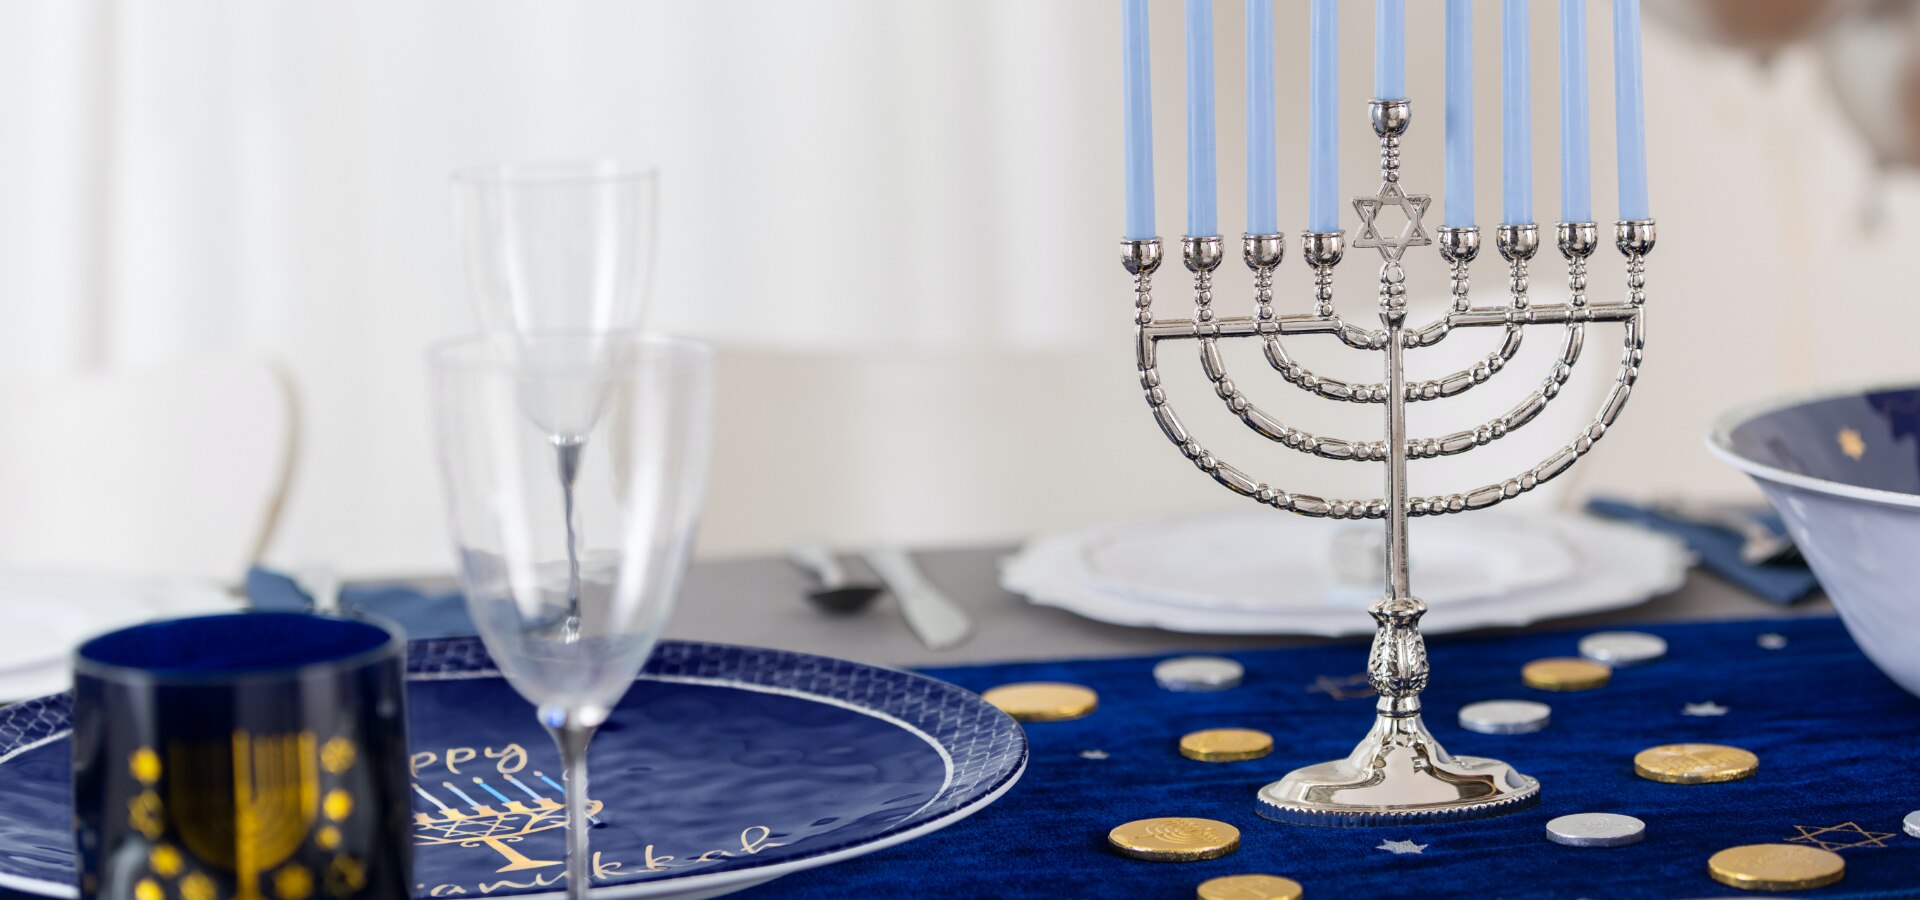 Une table agrémentée d'un chemin de table de la Hanoukka bleu marine, d'une ménorah de couleur argent et d'autres services de vaisselle et accessoires de couleur bleue, argent et or.